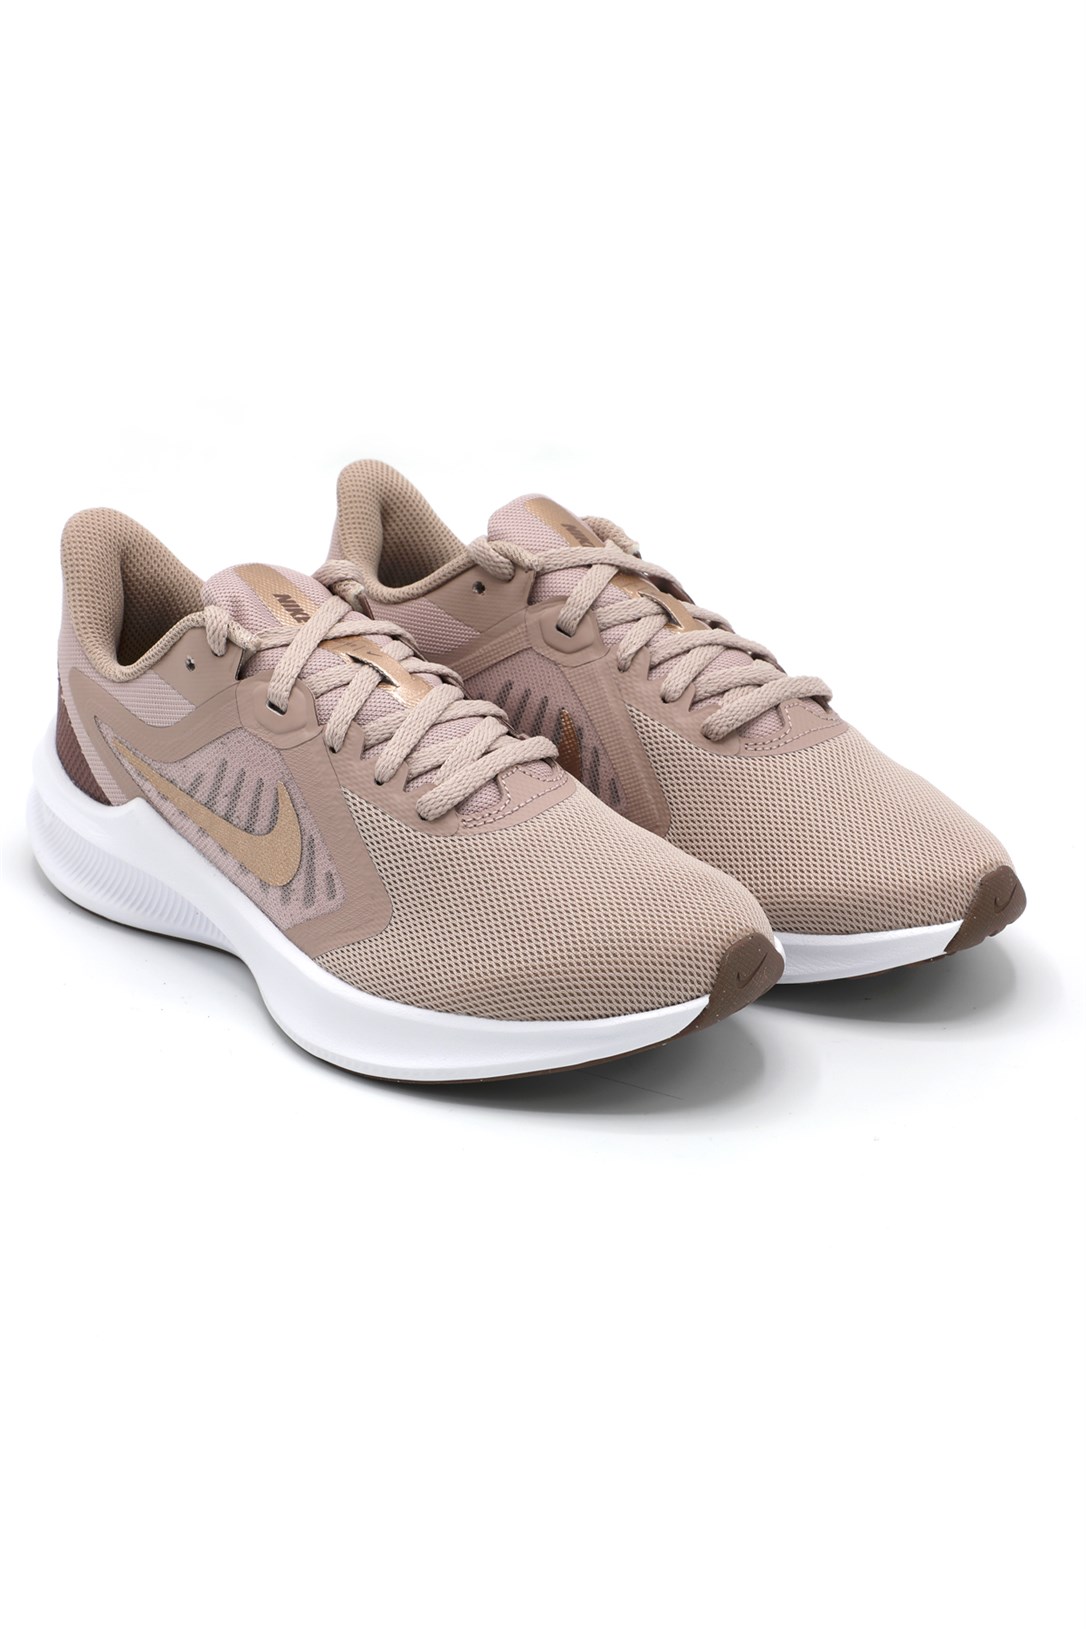 Nike Günlük Koşu Yürüyüş Bronz Kadın Spor Ayakkabı CI9984-200